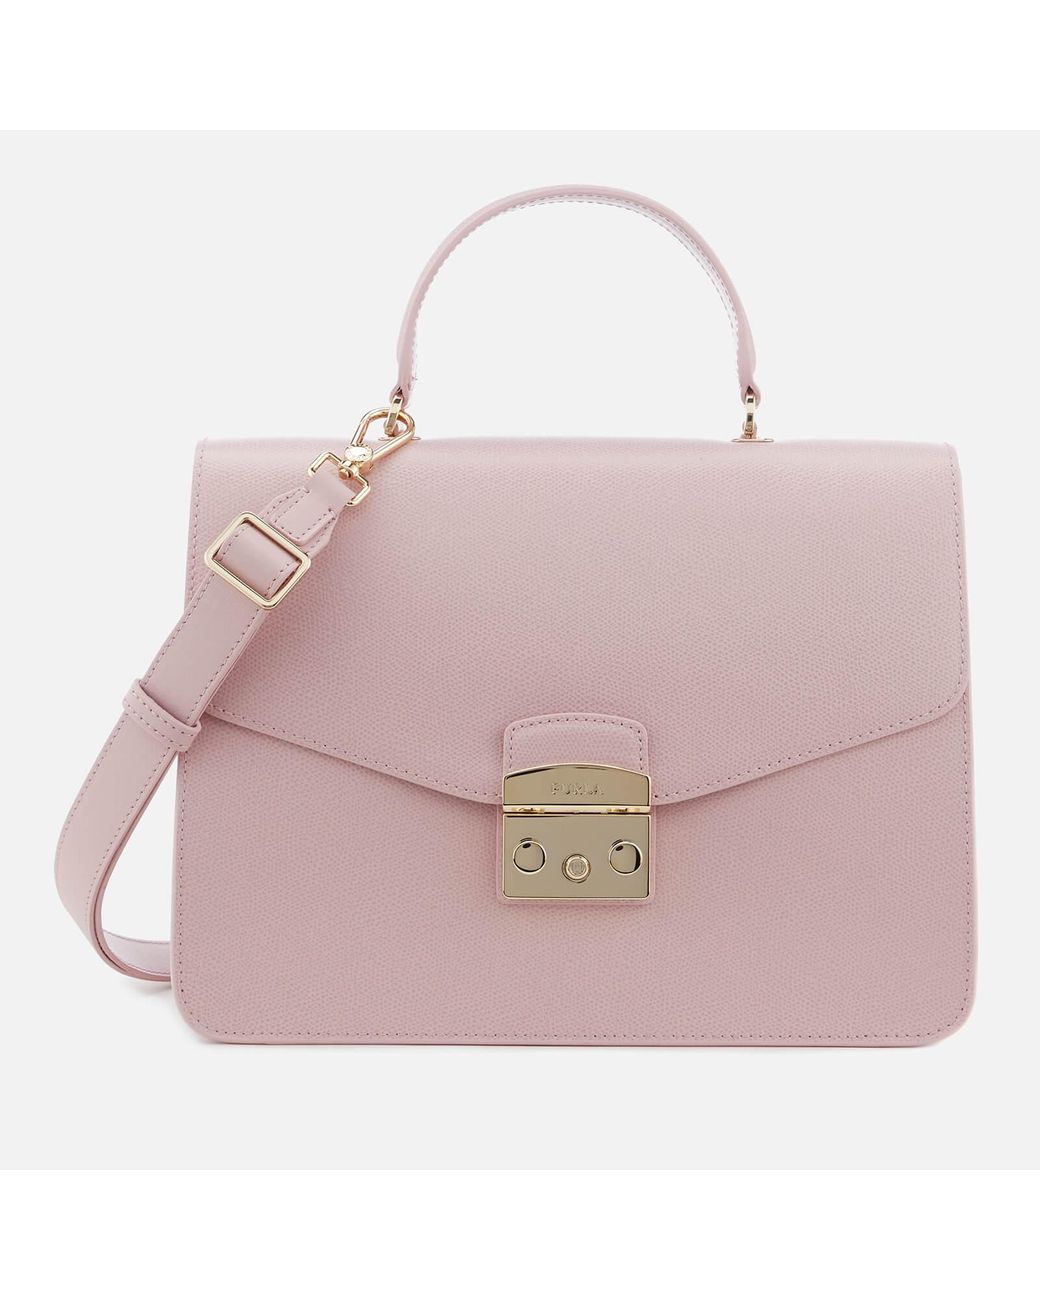 Furla Metropolis Medium Top Handle Bag in Pink | Lyst Canada